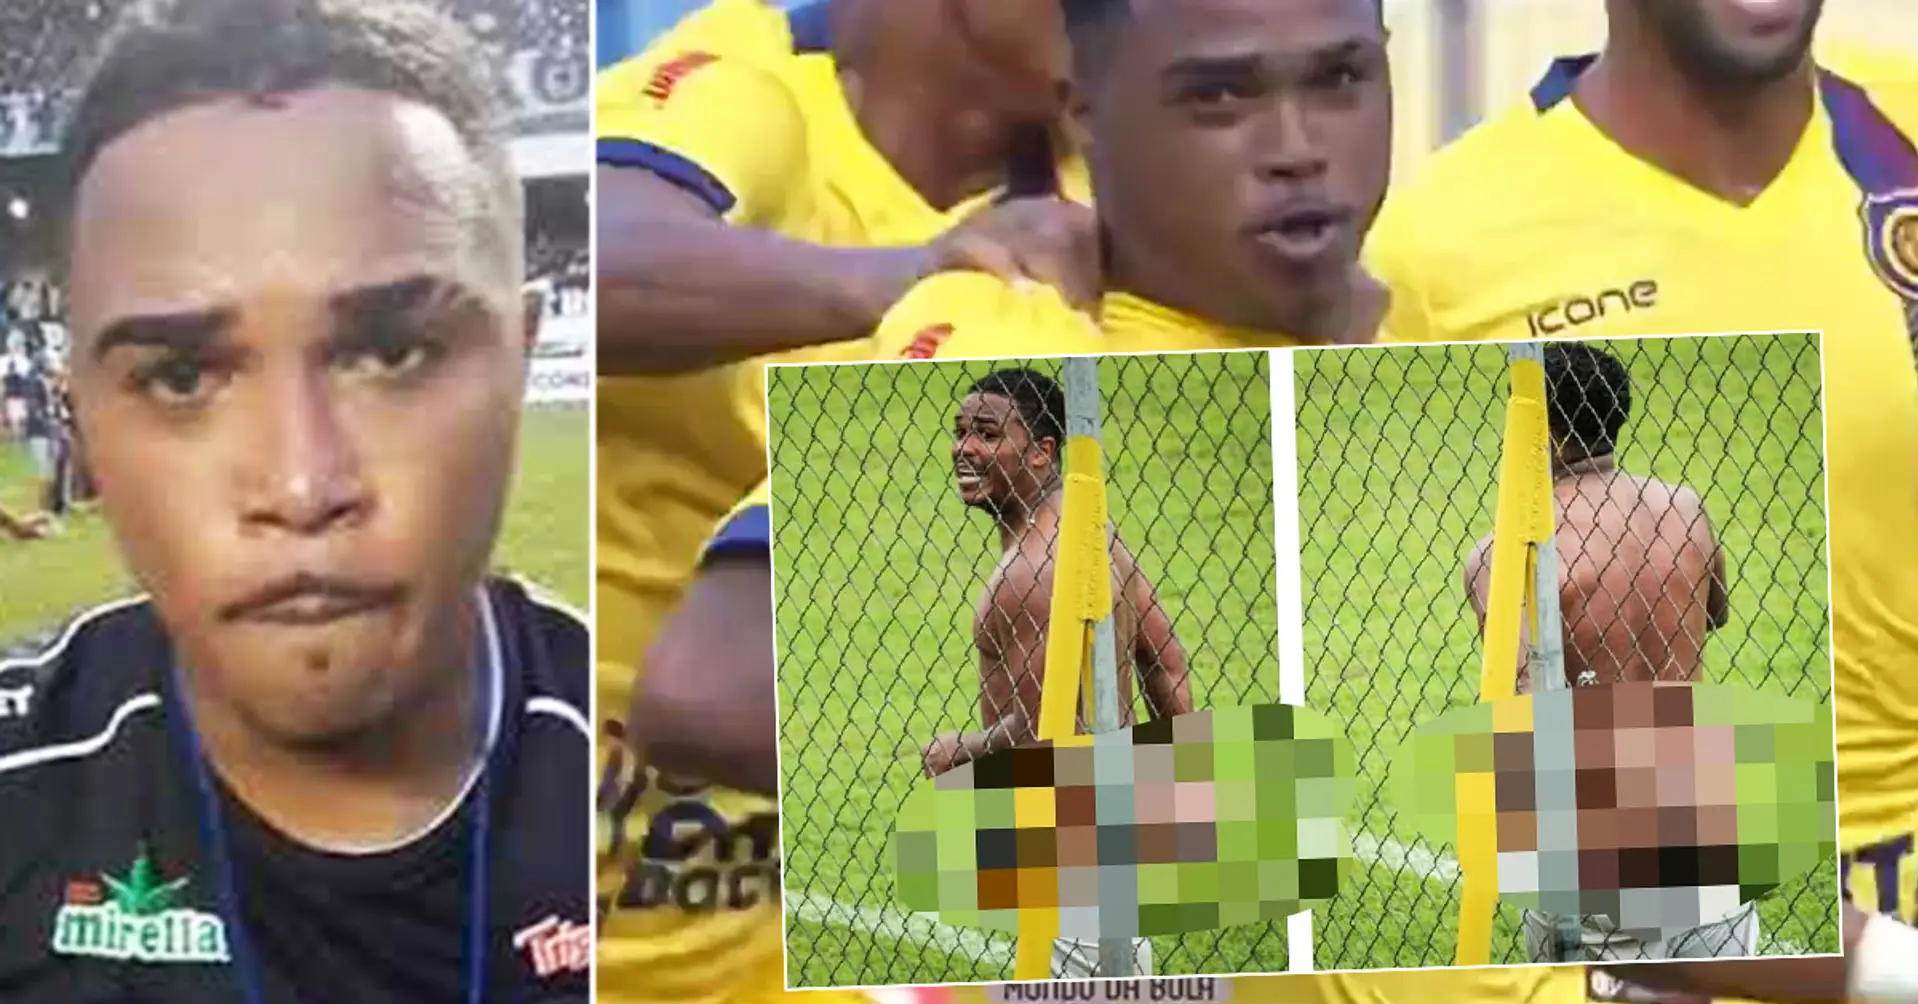 Un joueur brésilien agite ses parties génitales sur ses adversaires, étourdit les fans avec une fête nue et se voit interdire huit matchs